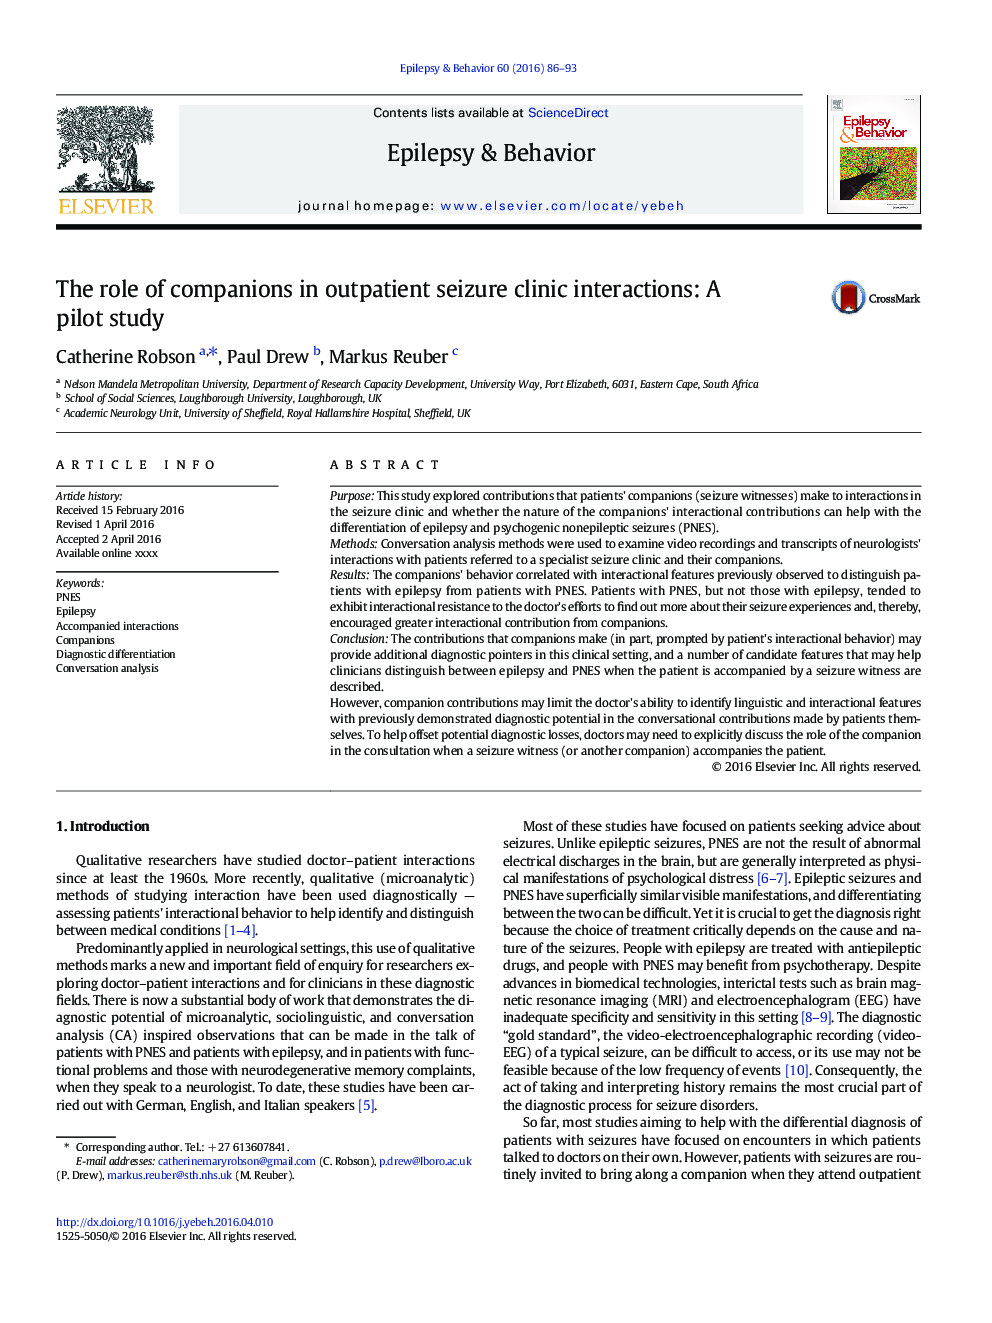 نقش همراهان در تعاملات کلینیک تشنج سرپایی: یک مطالعه آزمایشی 